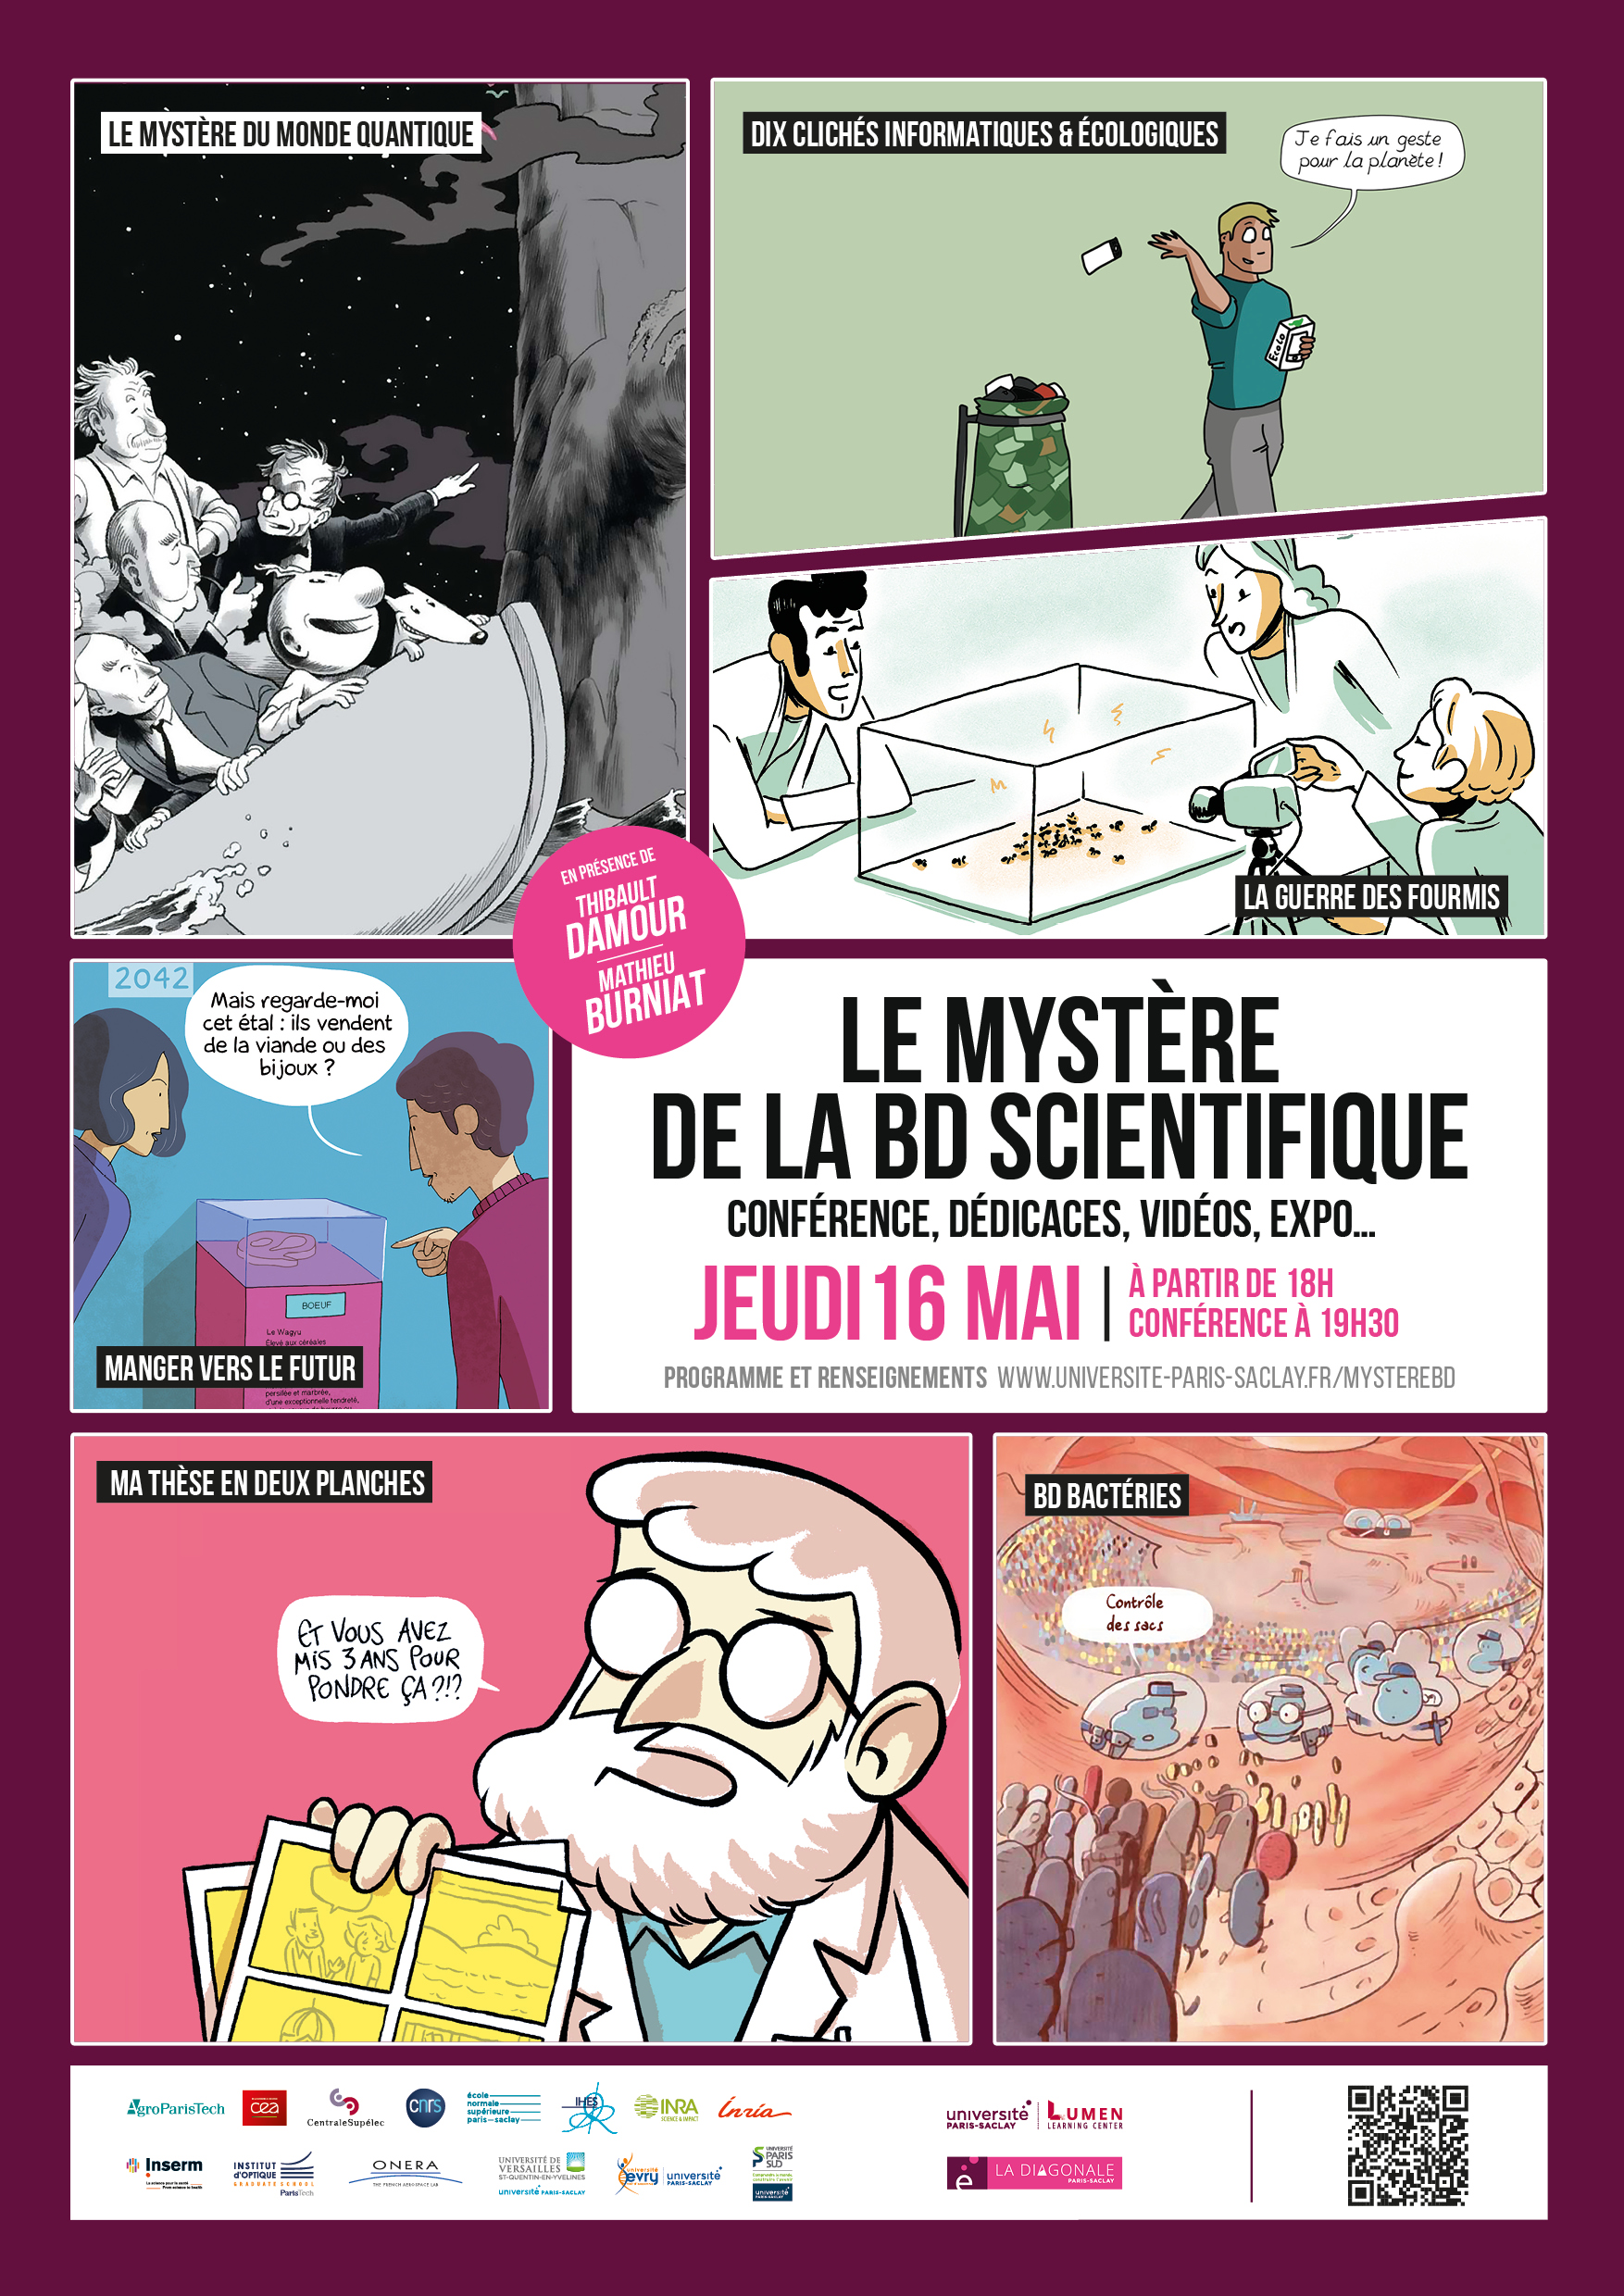 Conférence: Le mystère de la BD scientifique le 16 mai 2019 à l'Institut de Mathématiques d'Orsay